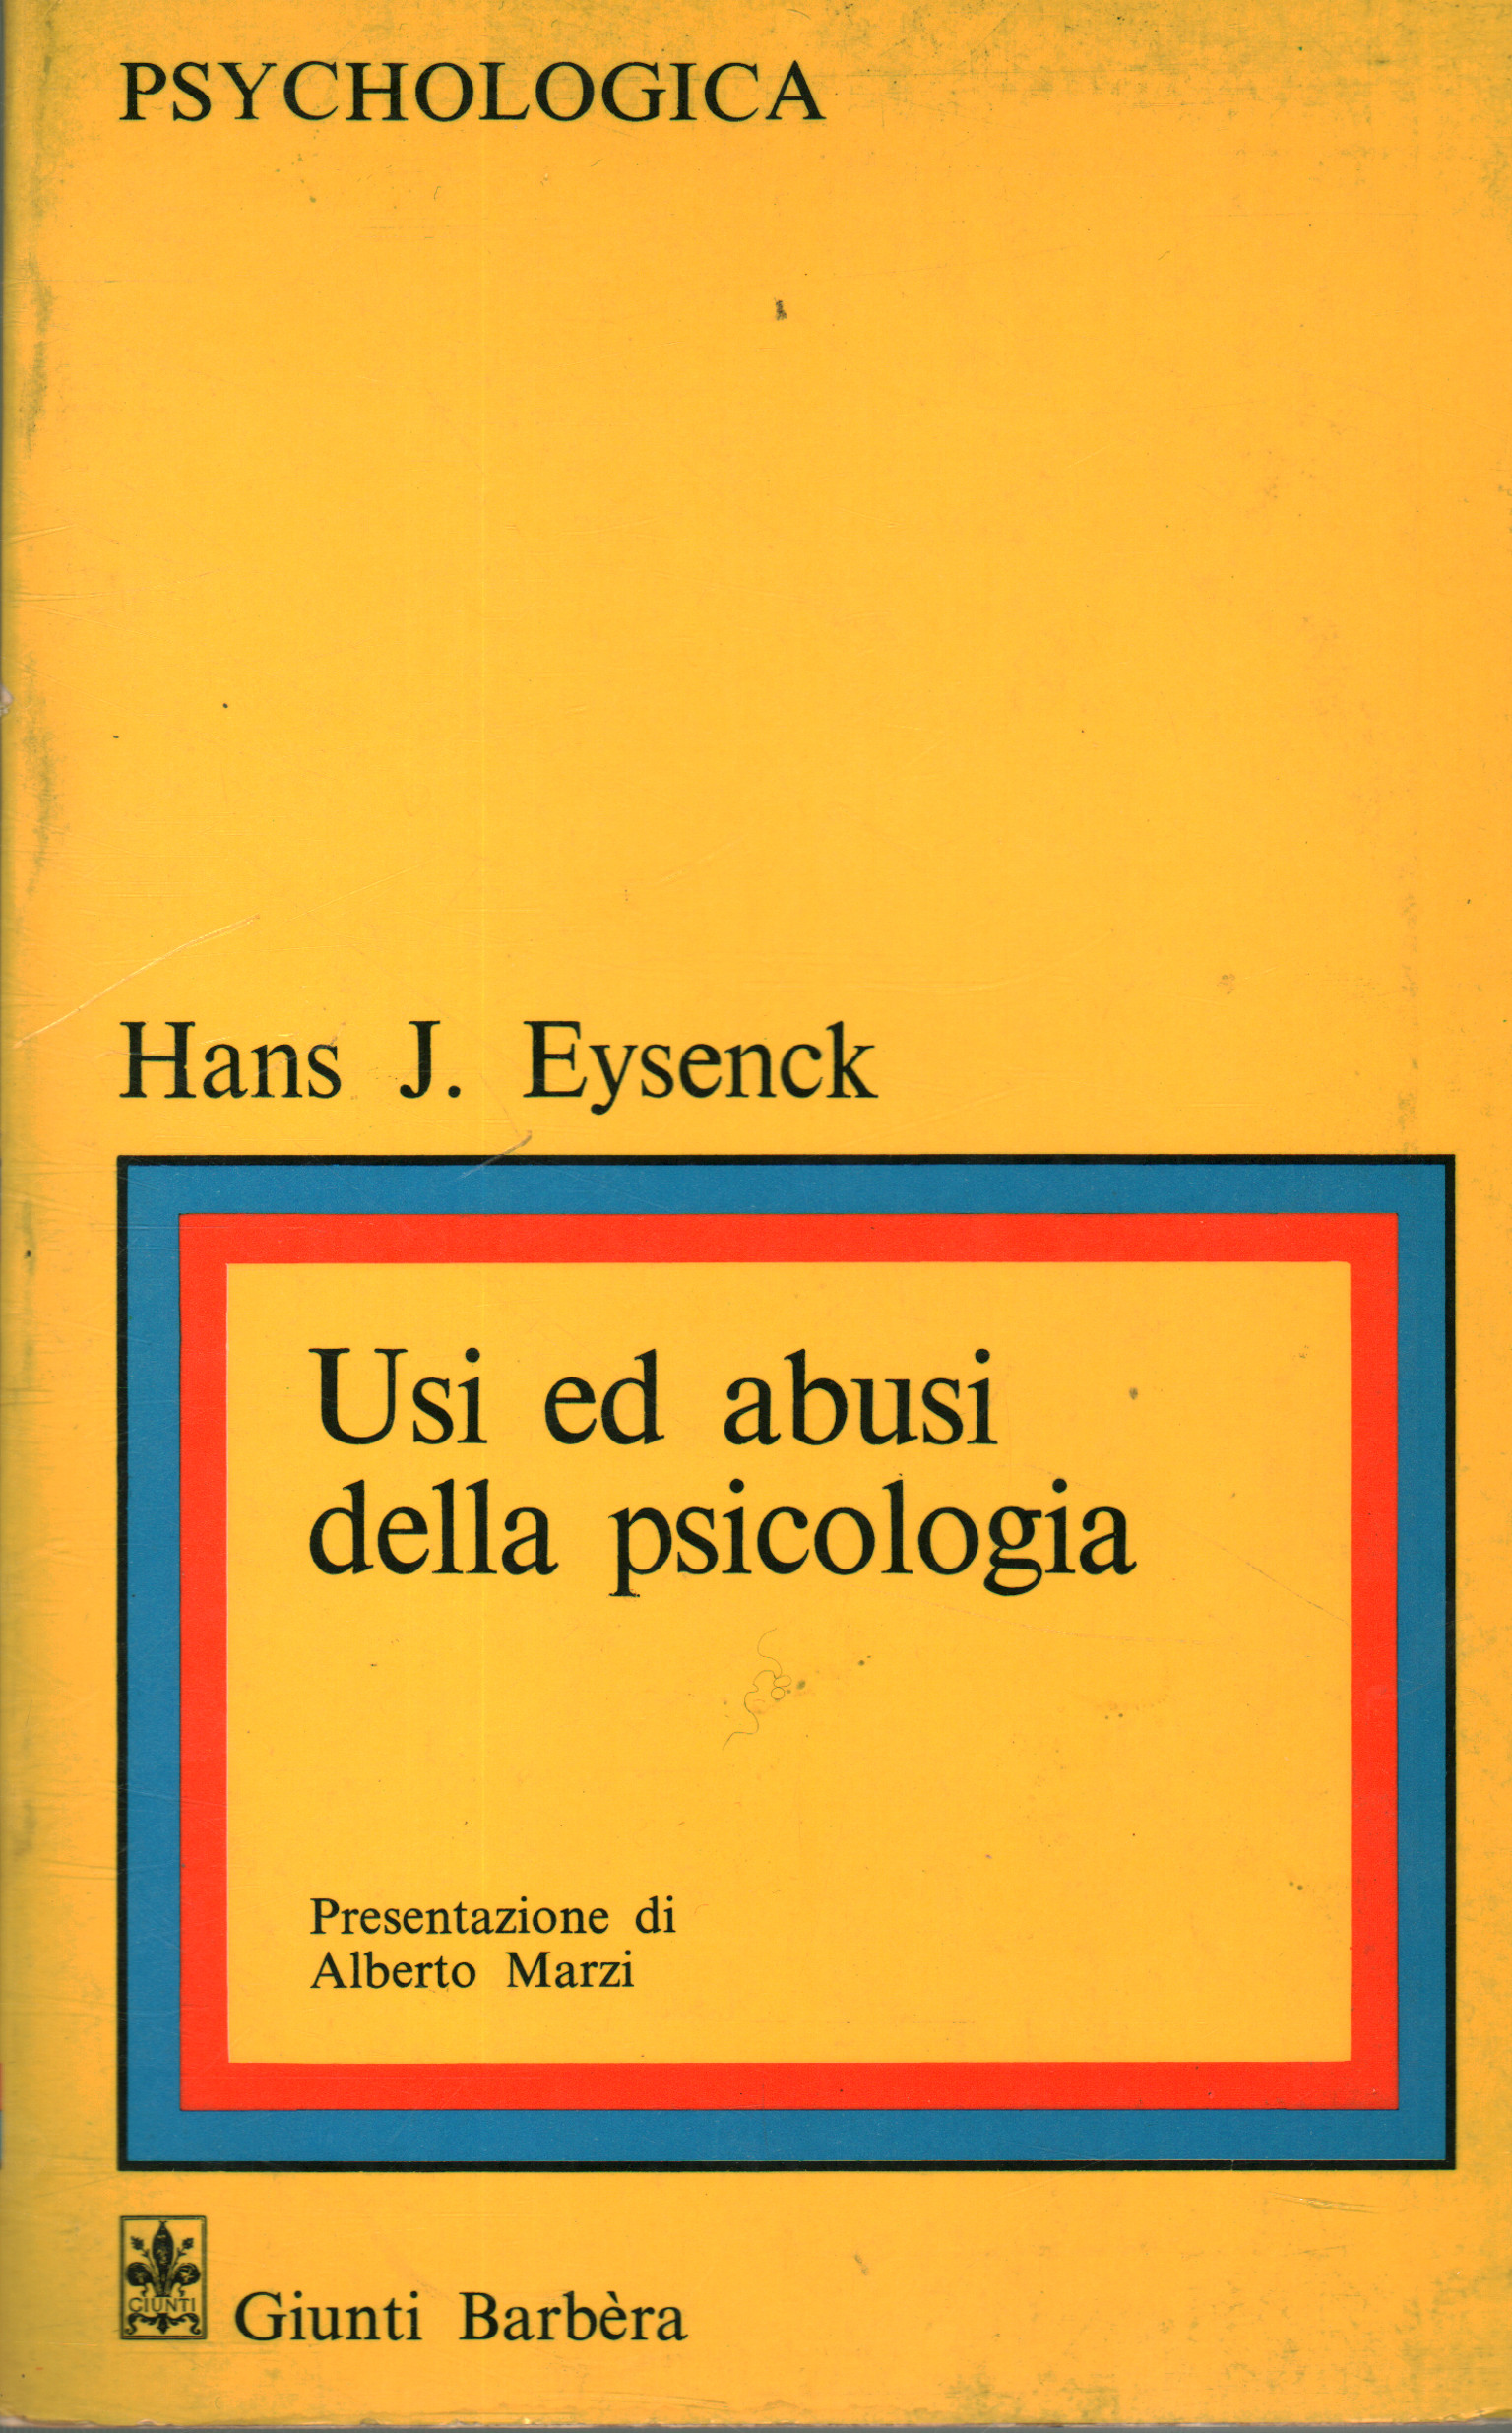 Usos y abusos de la psicología, Hans J. Eysenck